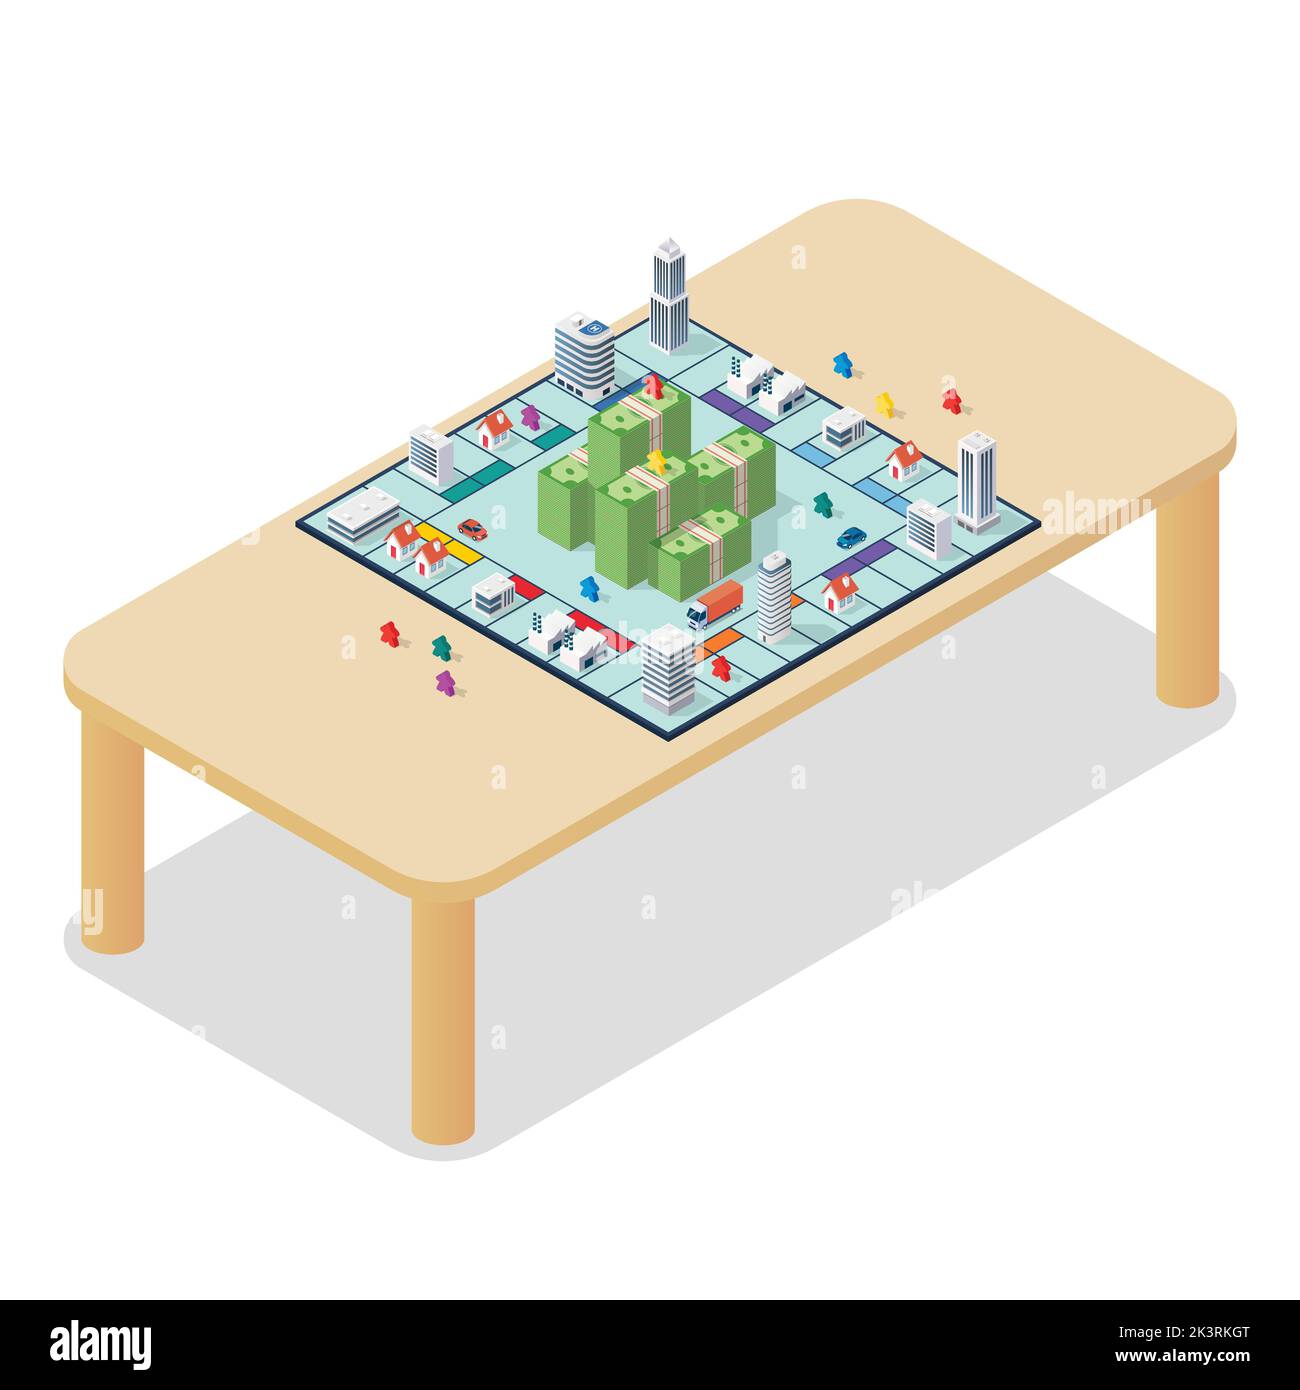 Brettspiel auf dem Tisch. Isometrische Ansicht. Freizeithobby-Konzept. Vektorgrafik Stock Vektor